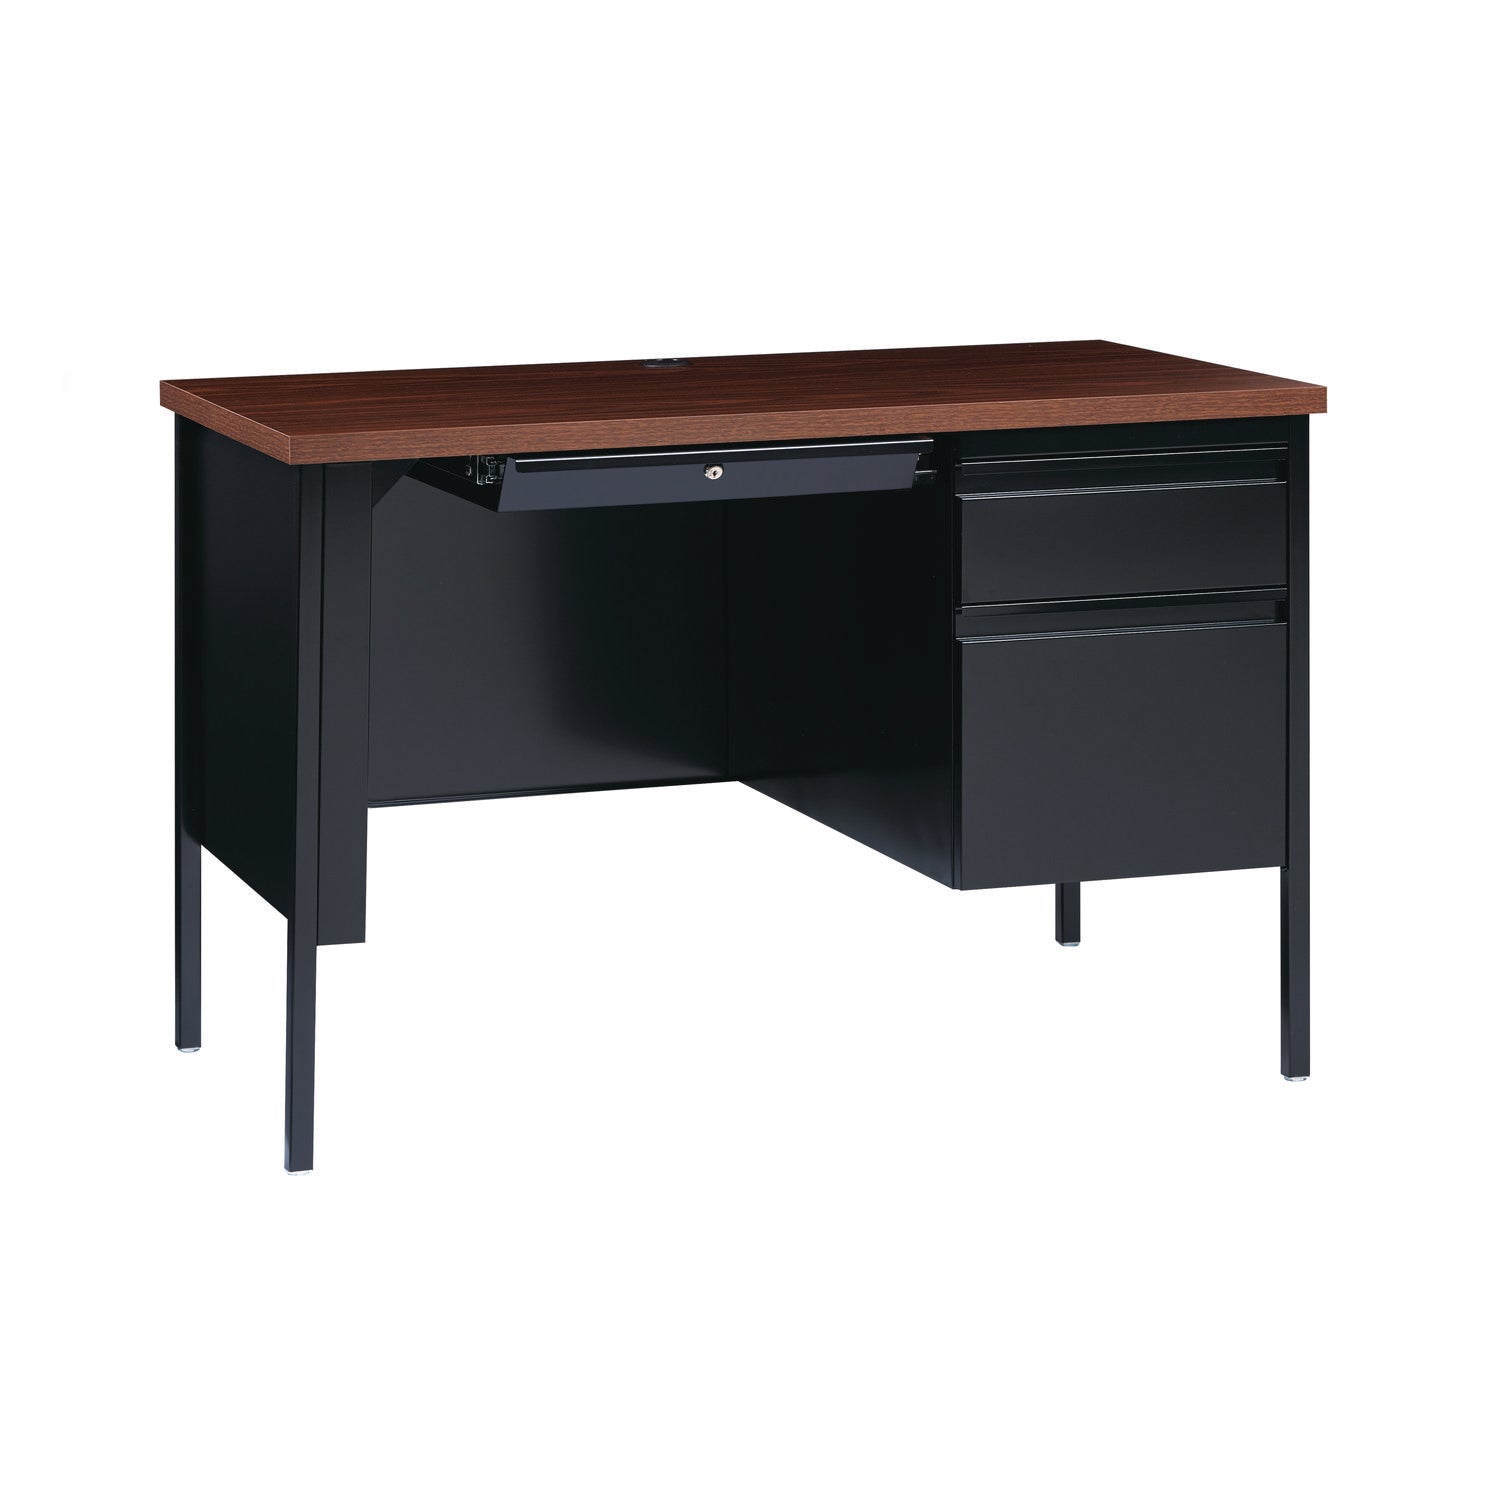 single-pedestal-steel-desk-455-x-24-x-295-mocha-black-black-legs_alehsd4524bm - 7